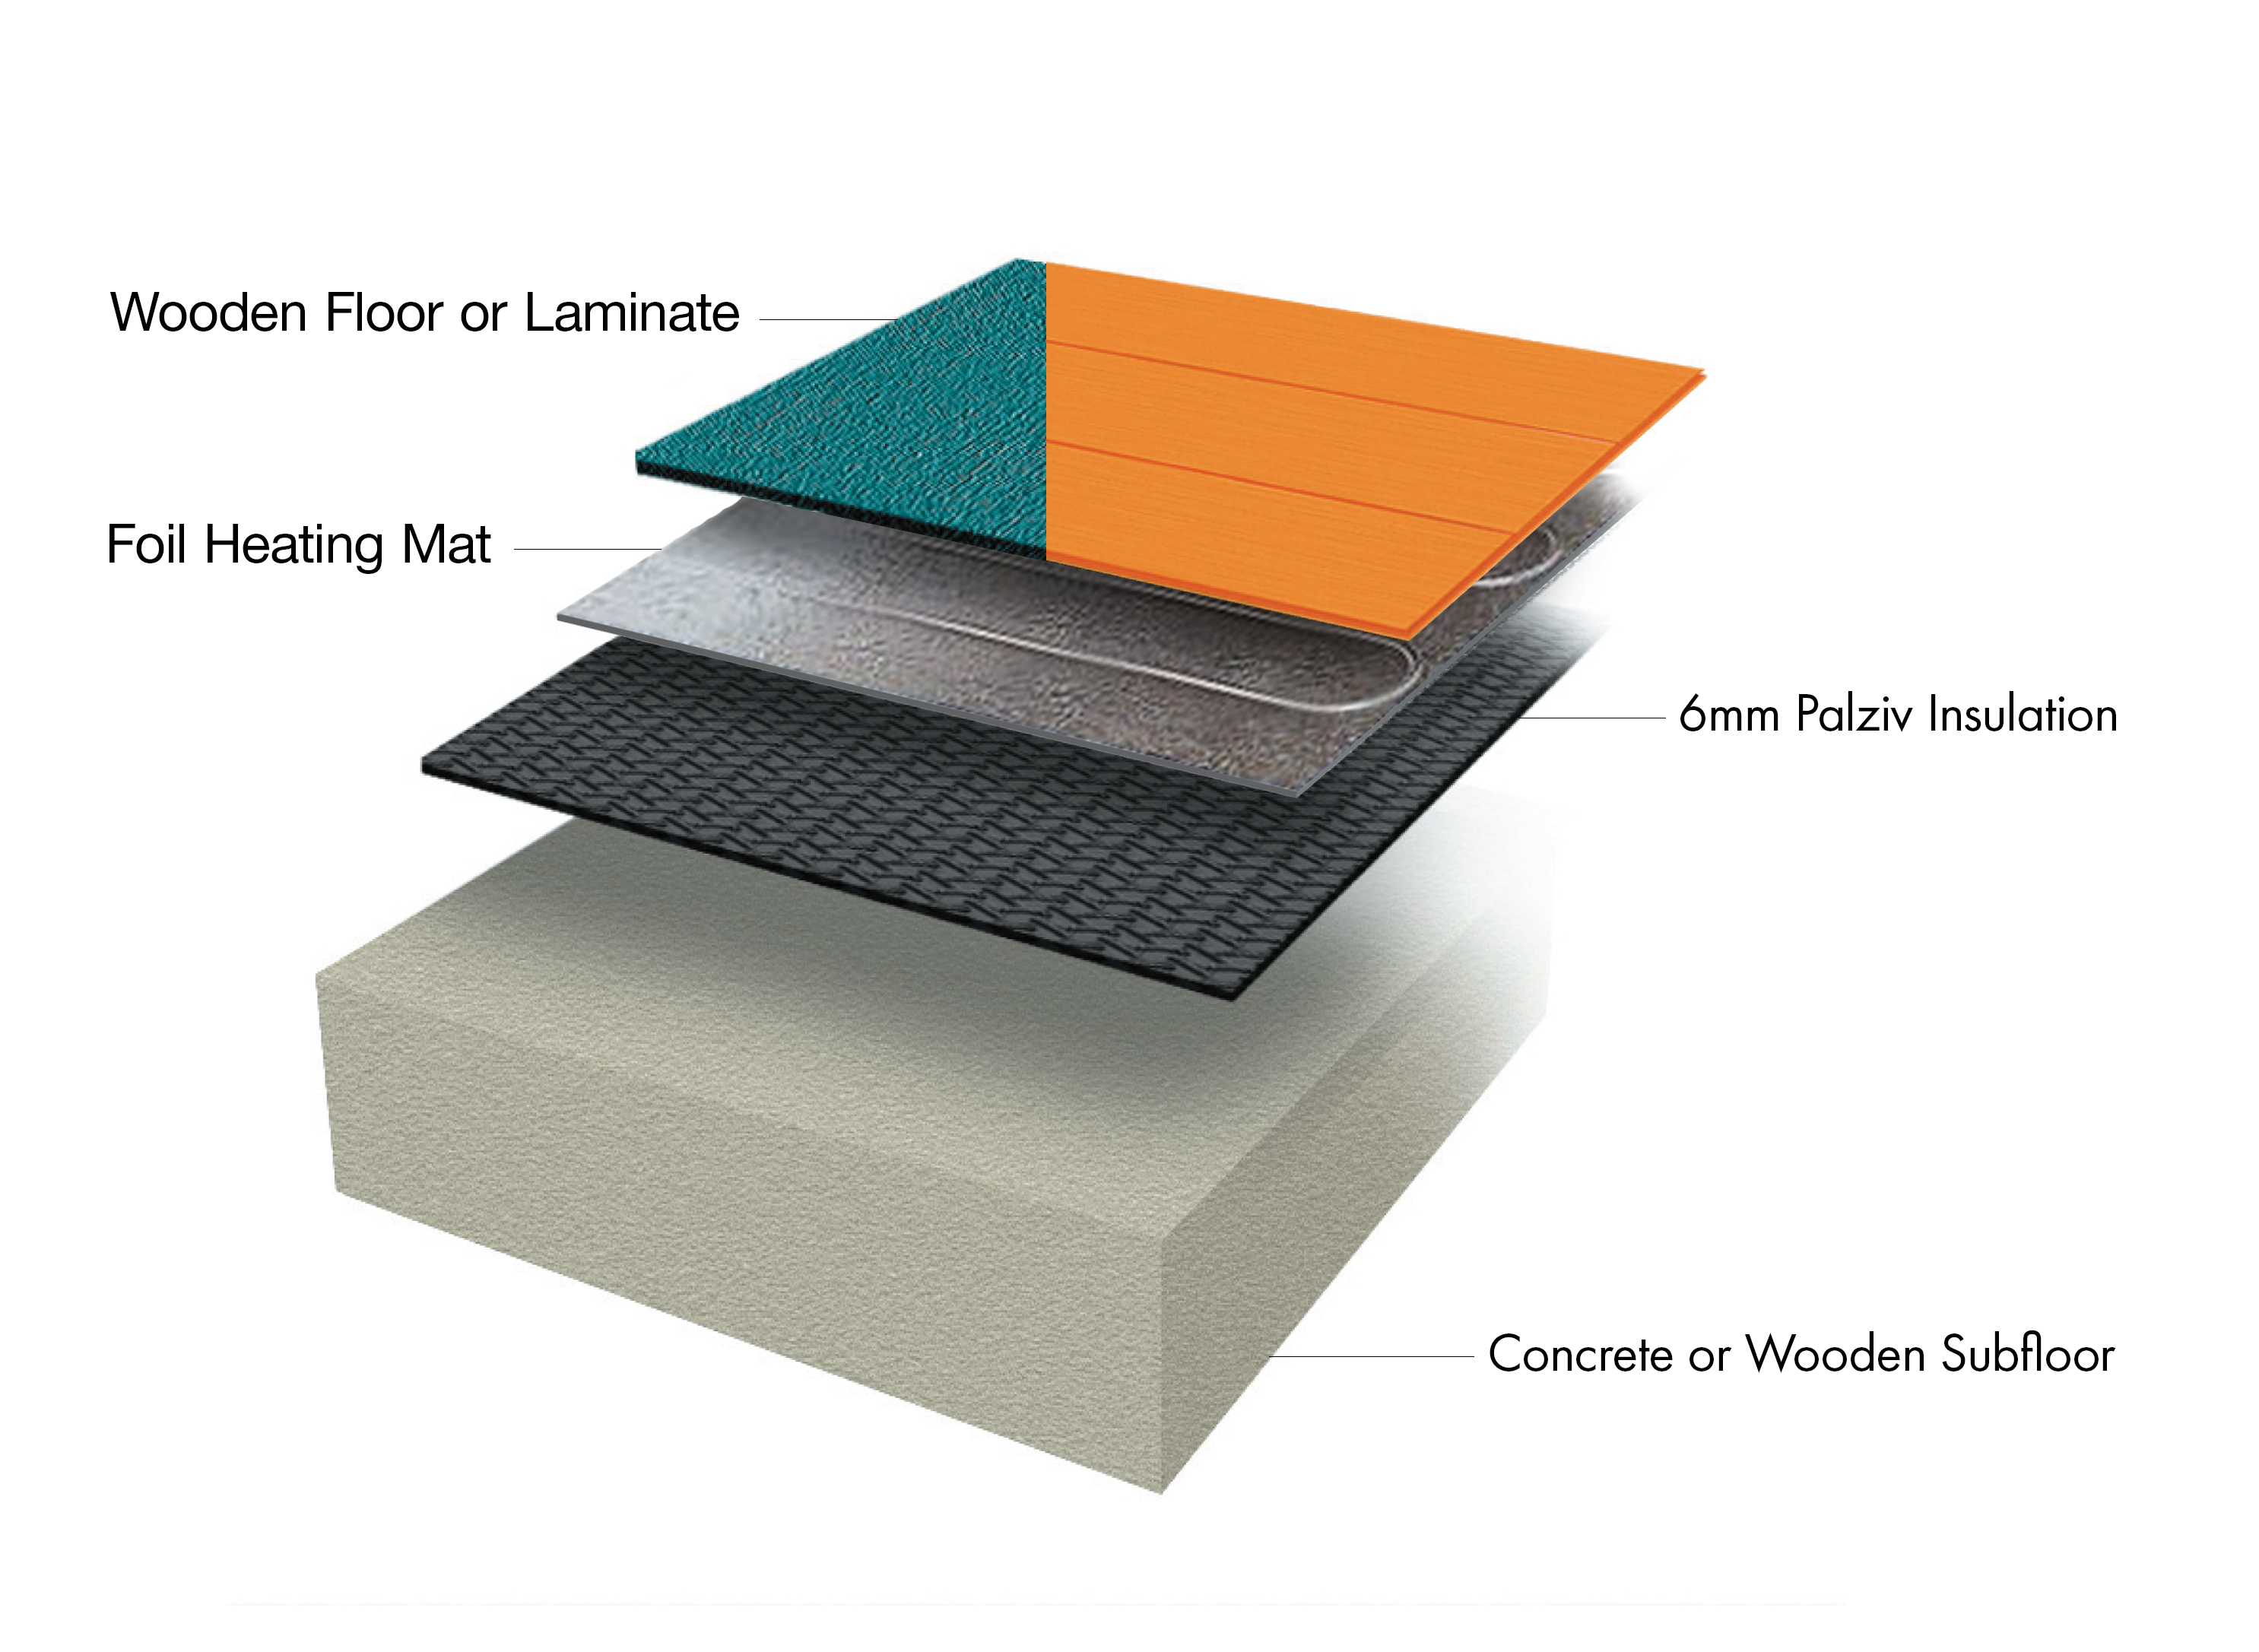 Electric Underfloor Heating Under, Electric Underfloor Heating For Laminate Floors